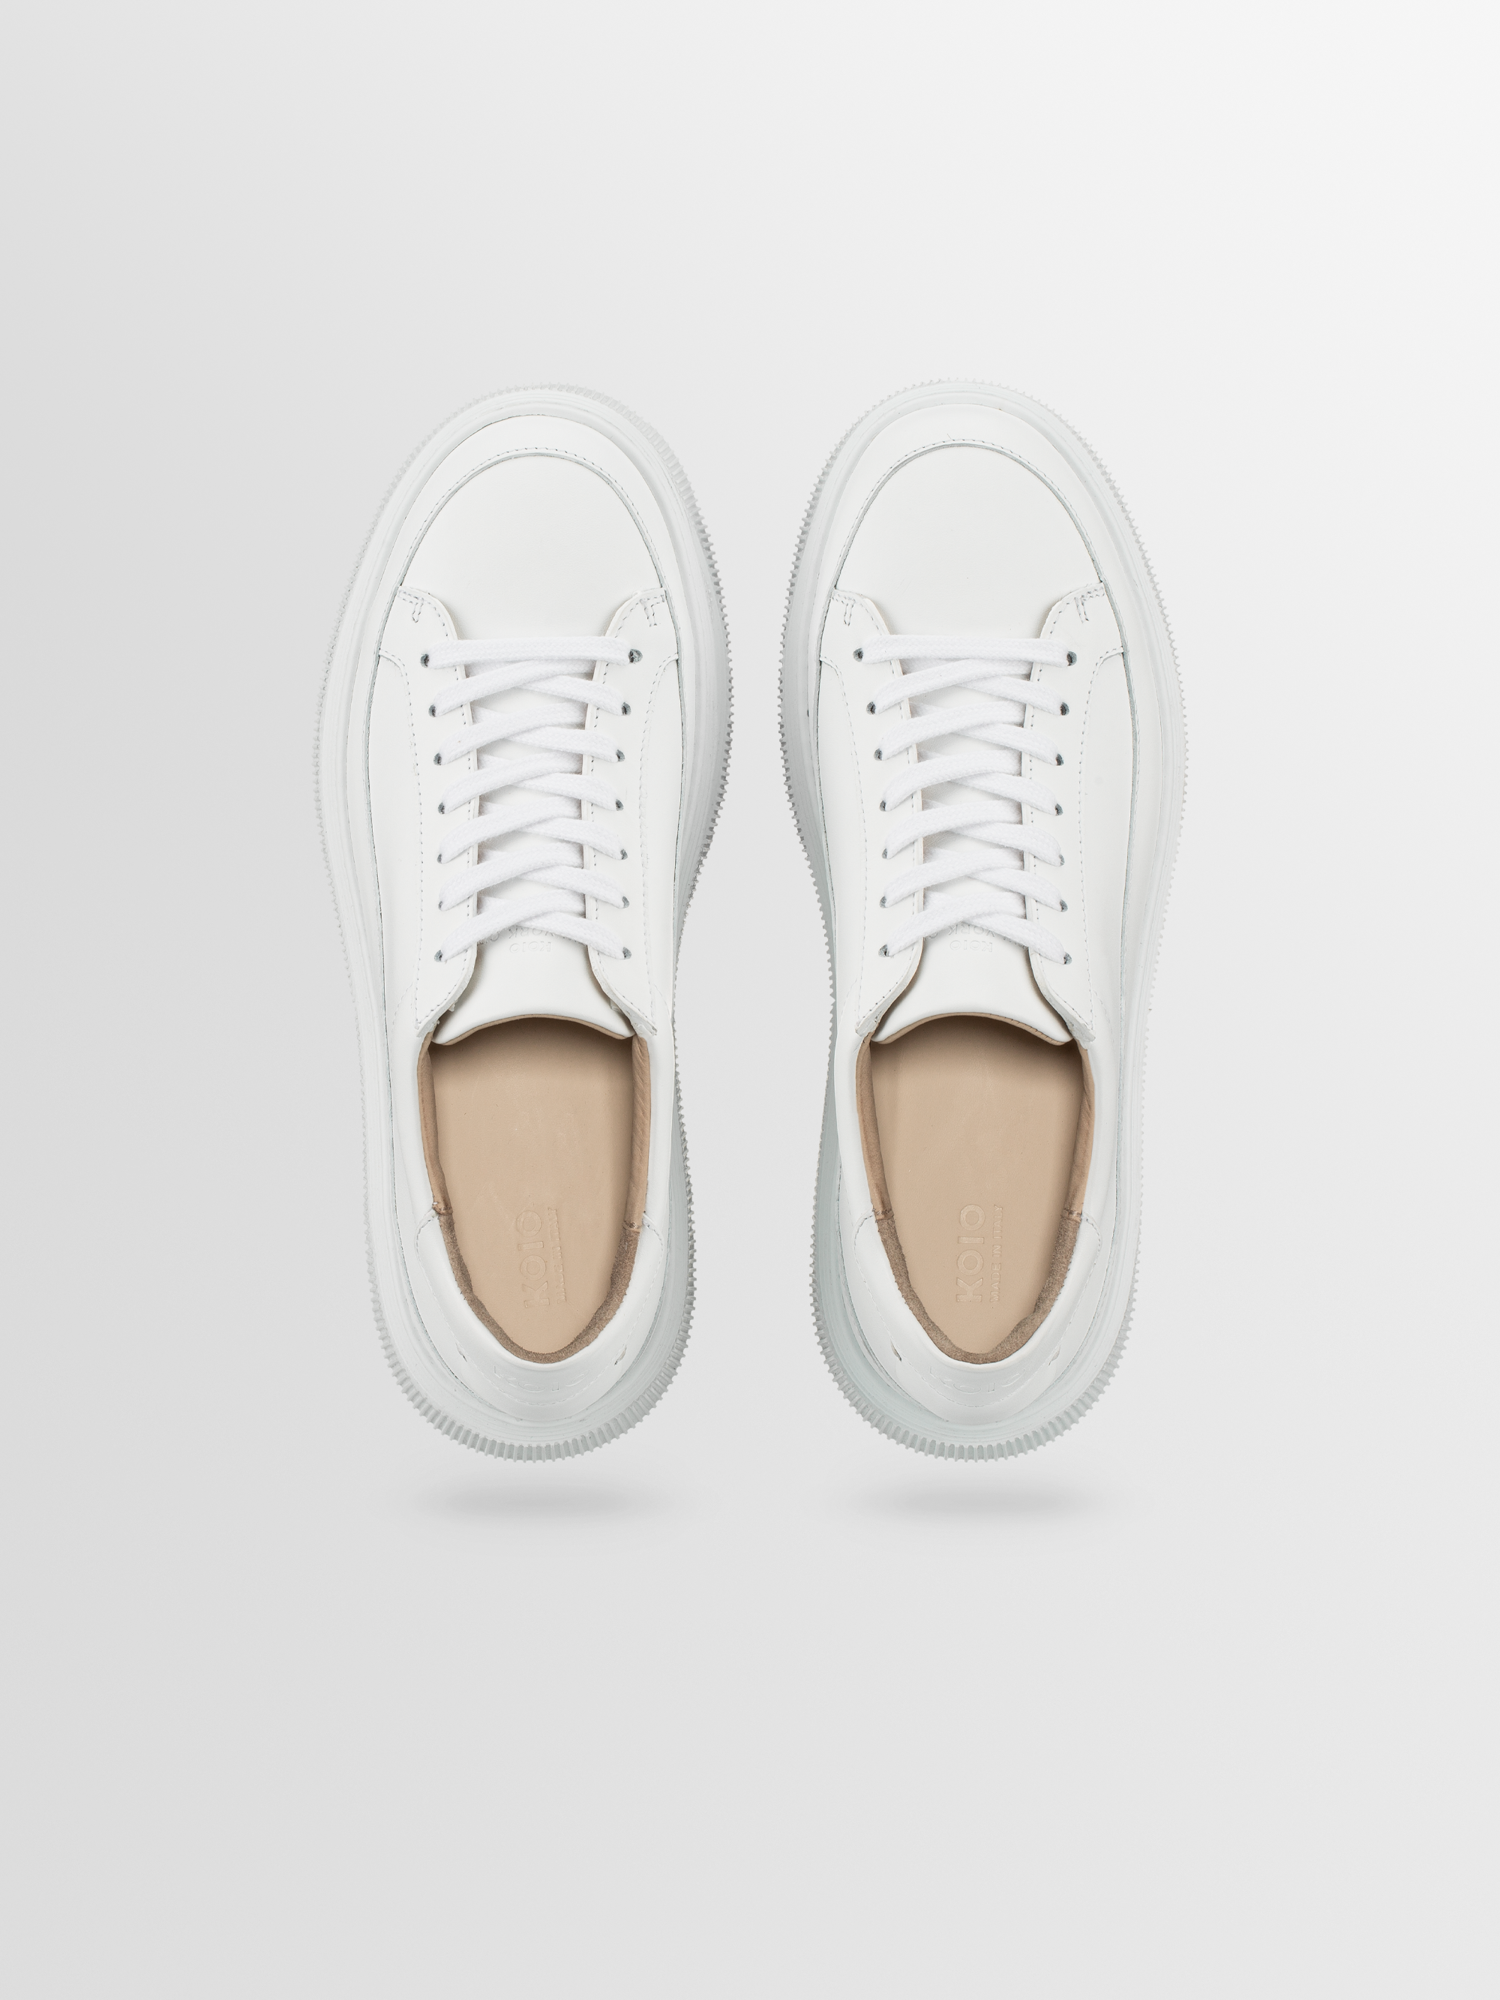 Women's White Platform Leather Sneakers | Mira in Triple White | Koio ...